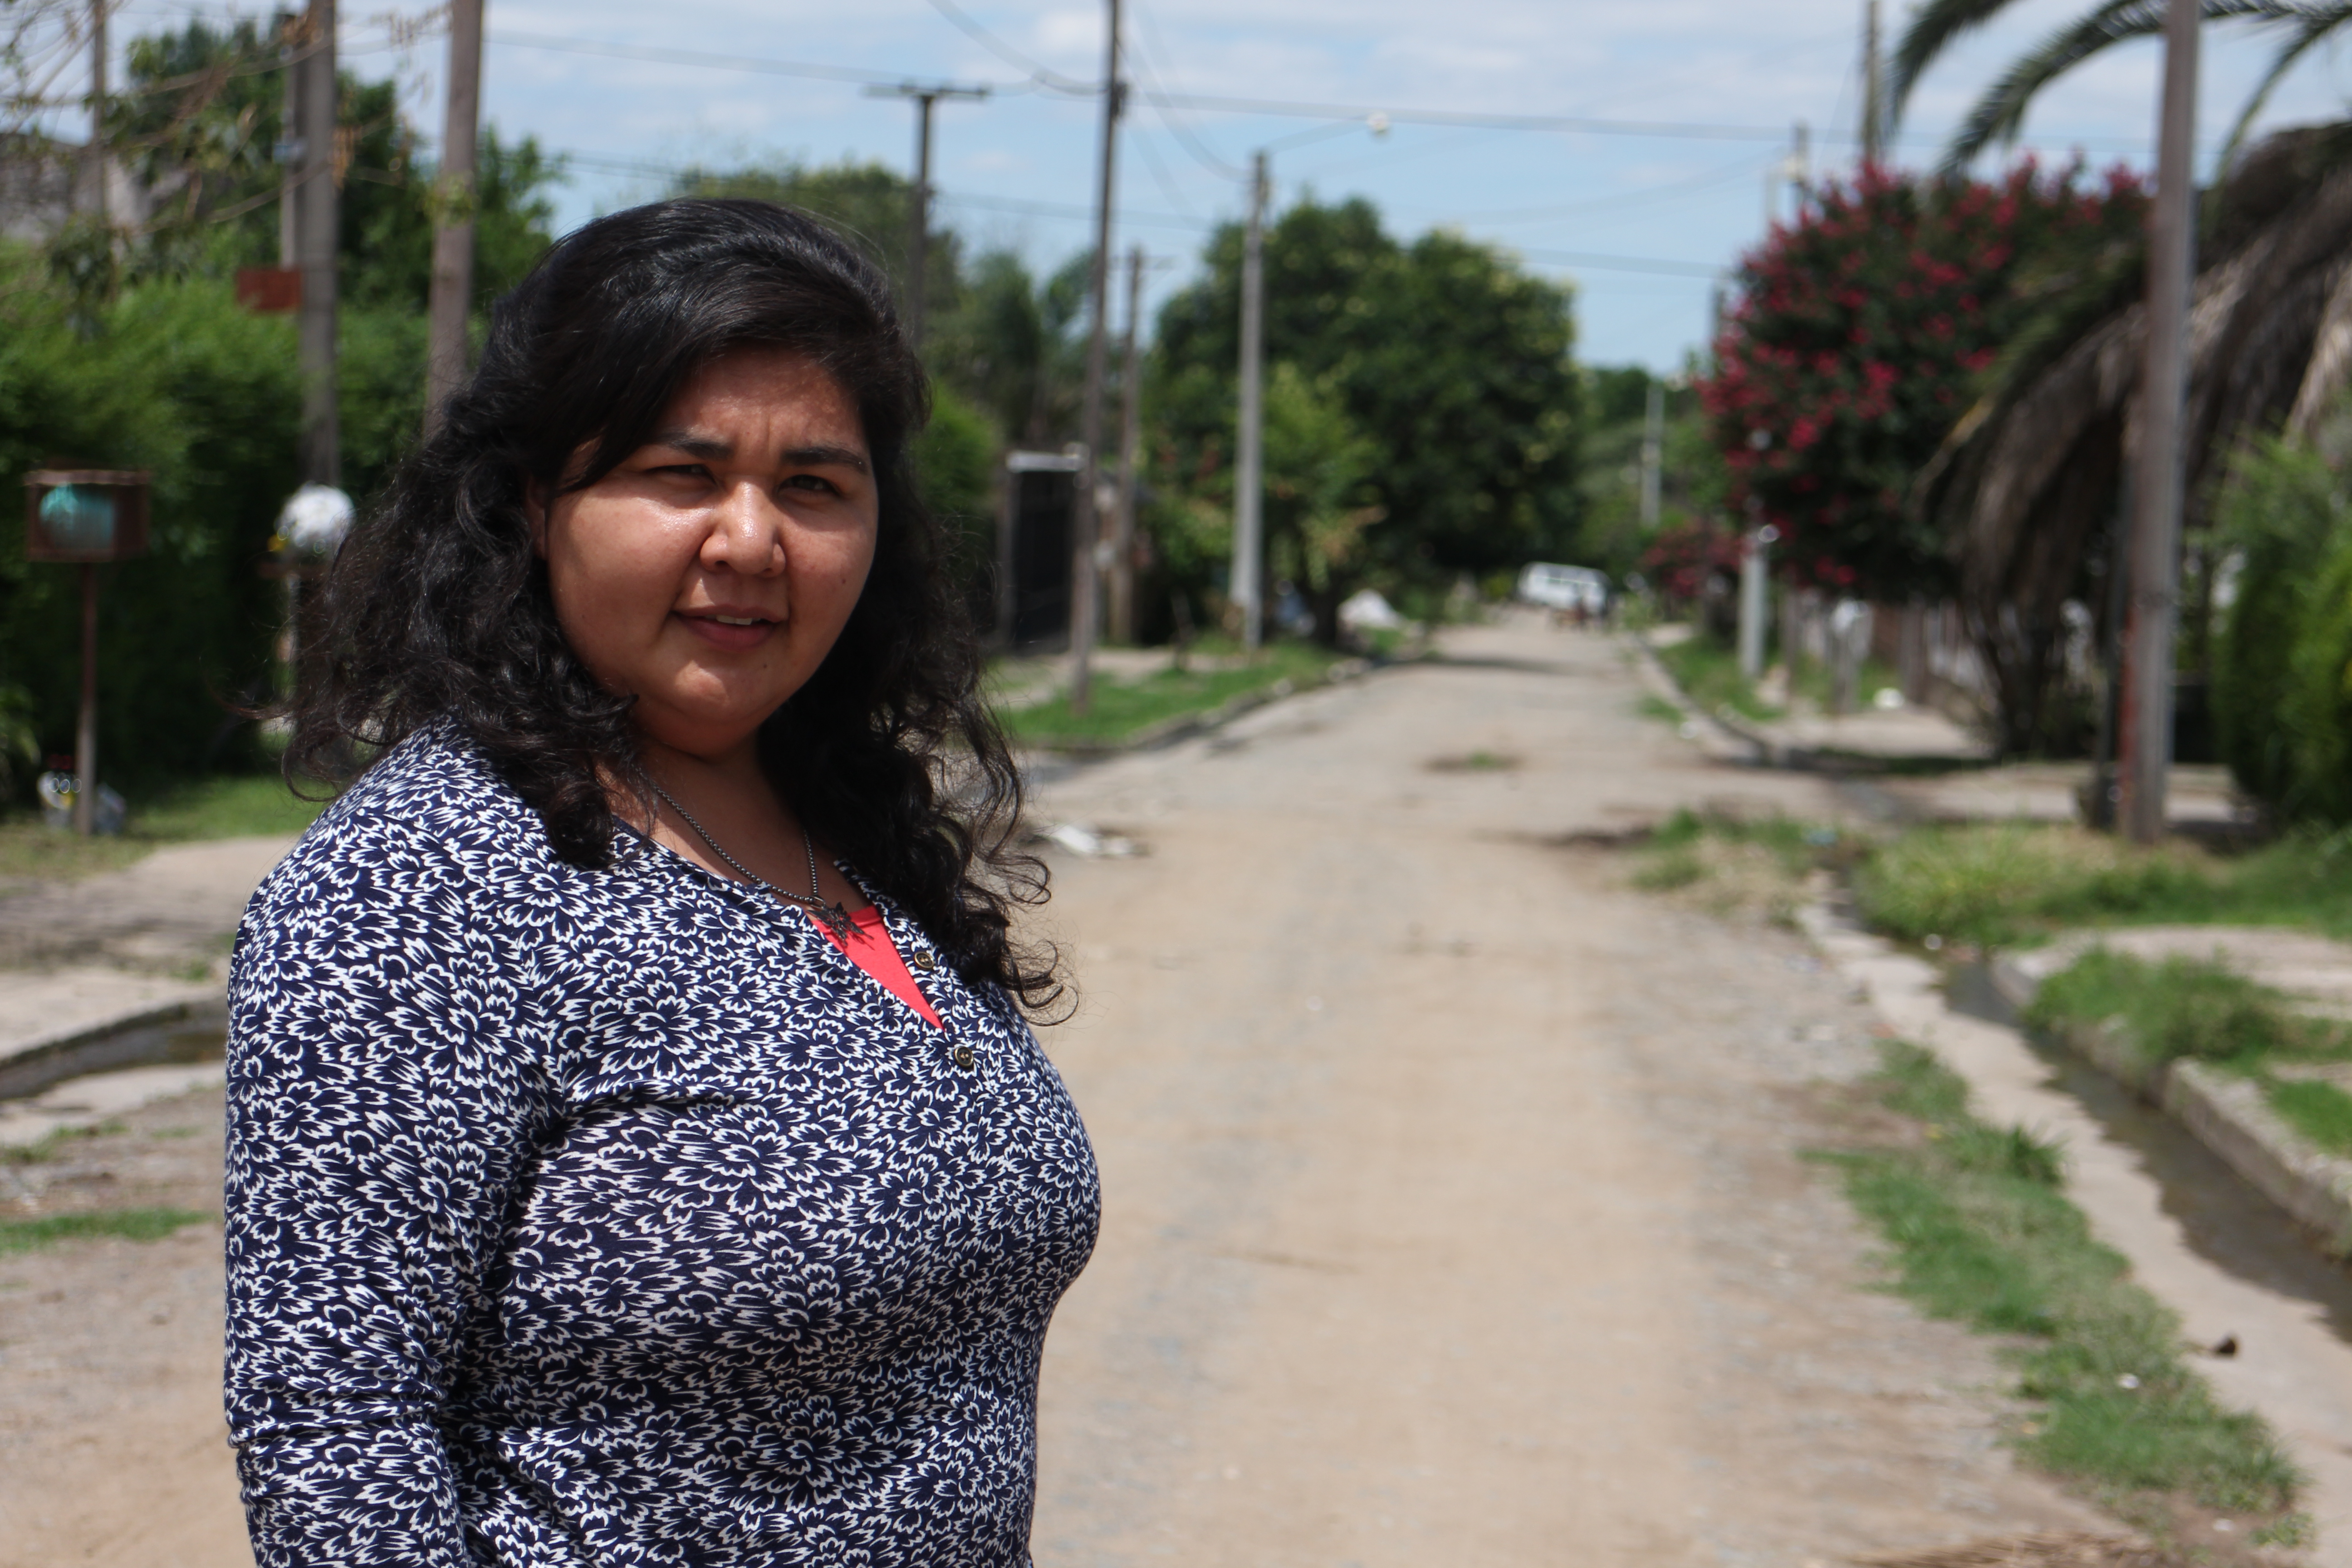 Bettina on her home street in Tucuman